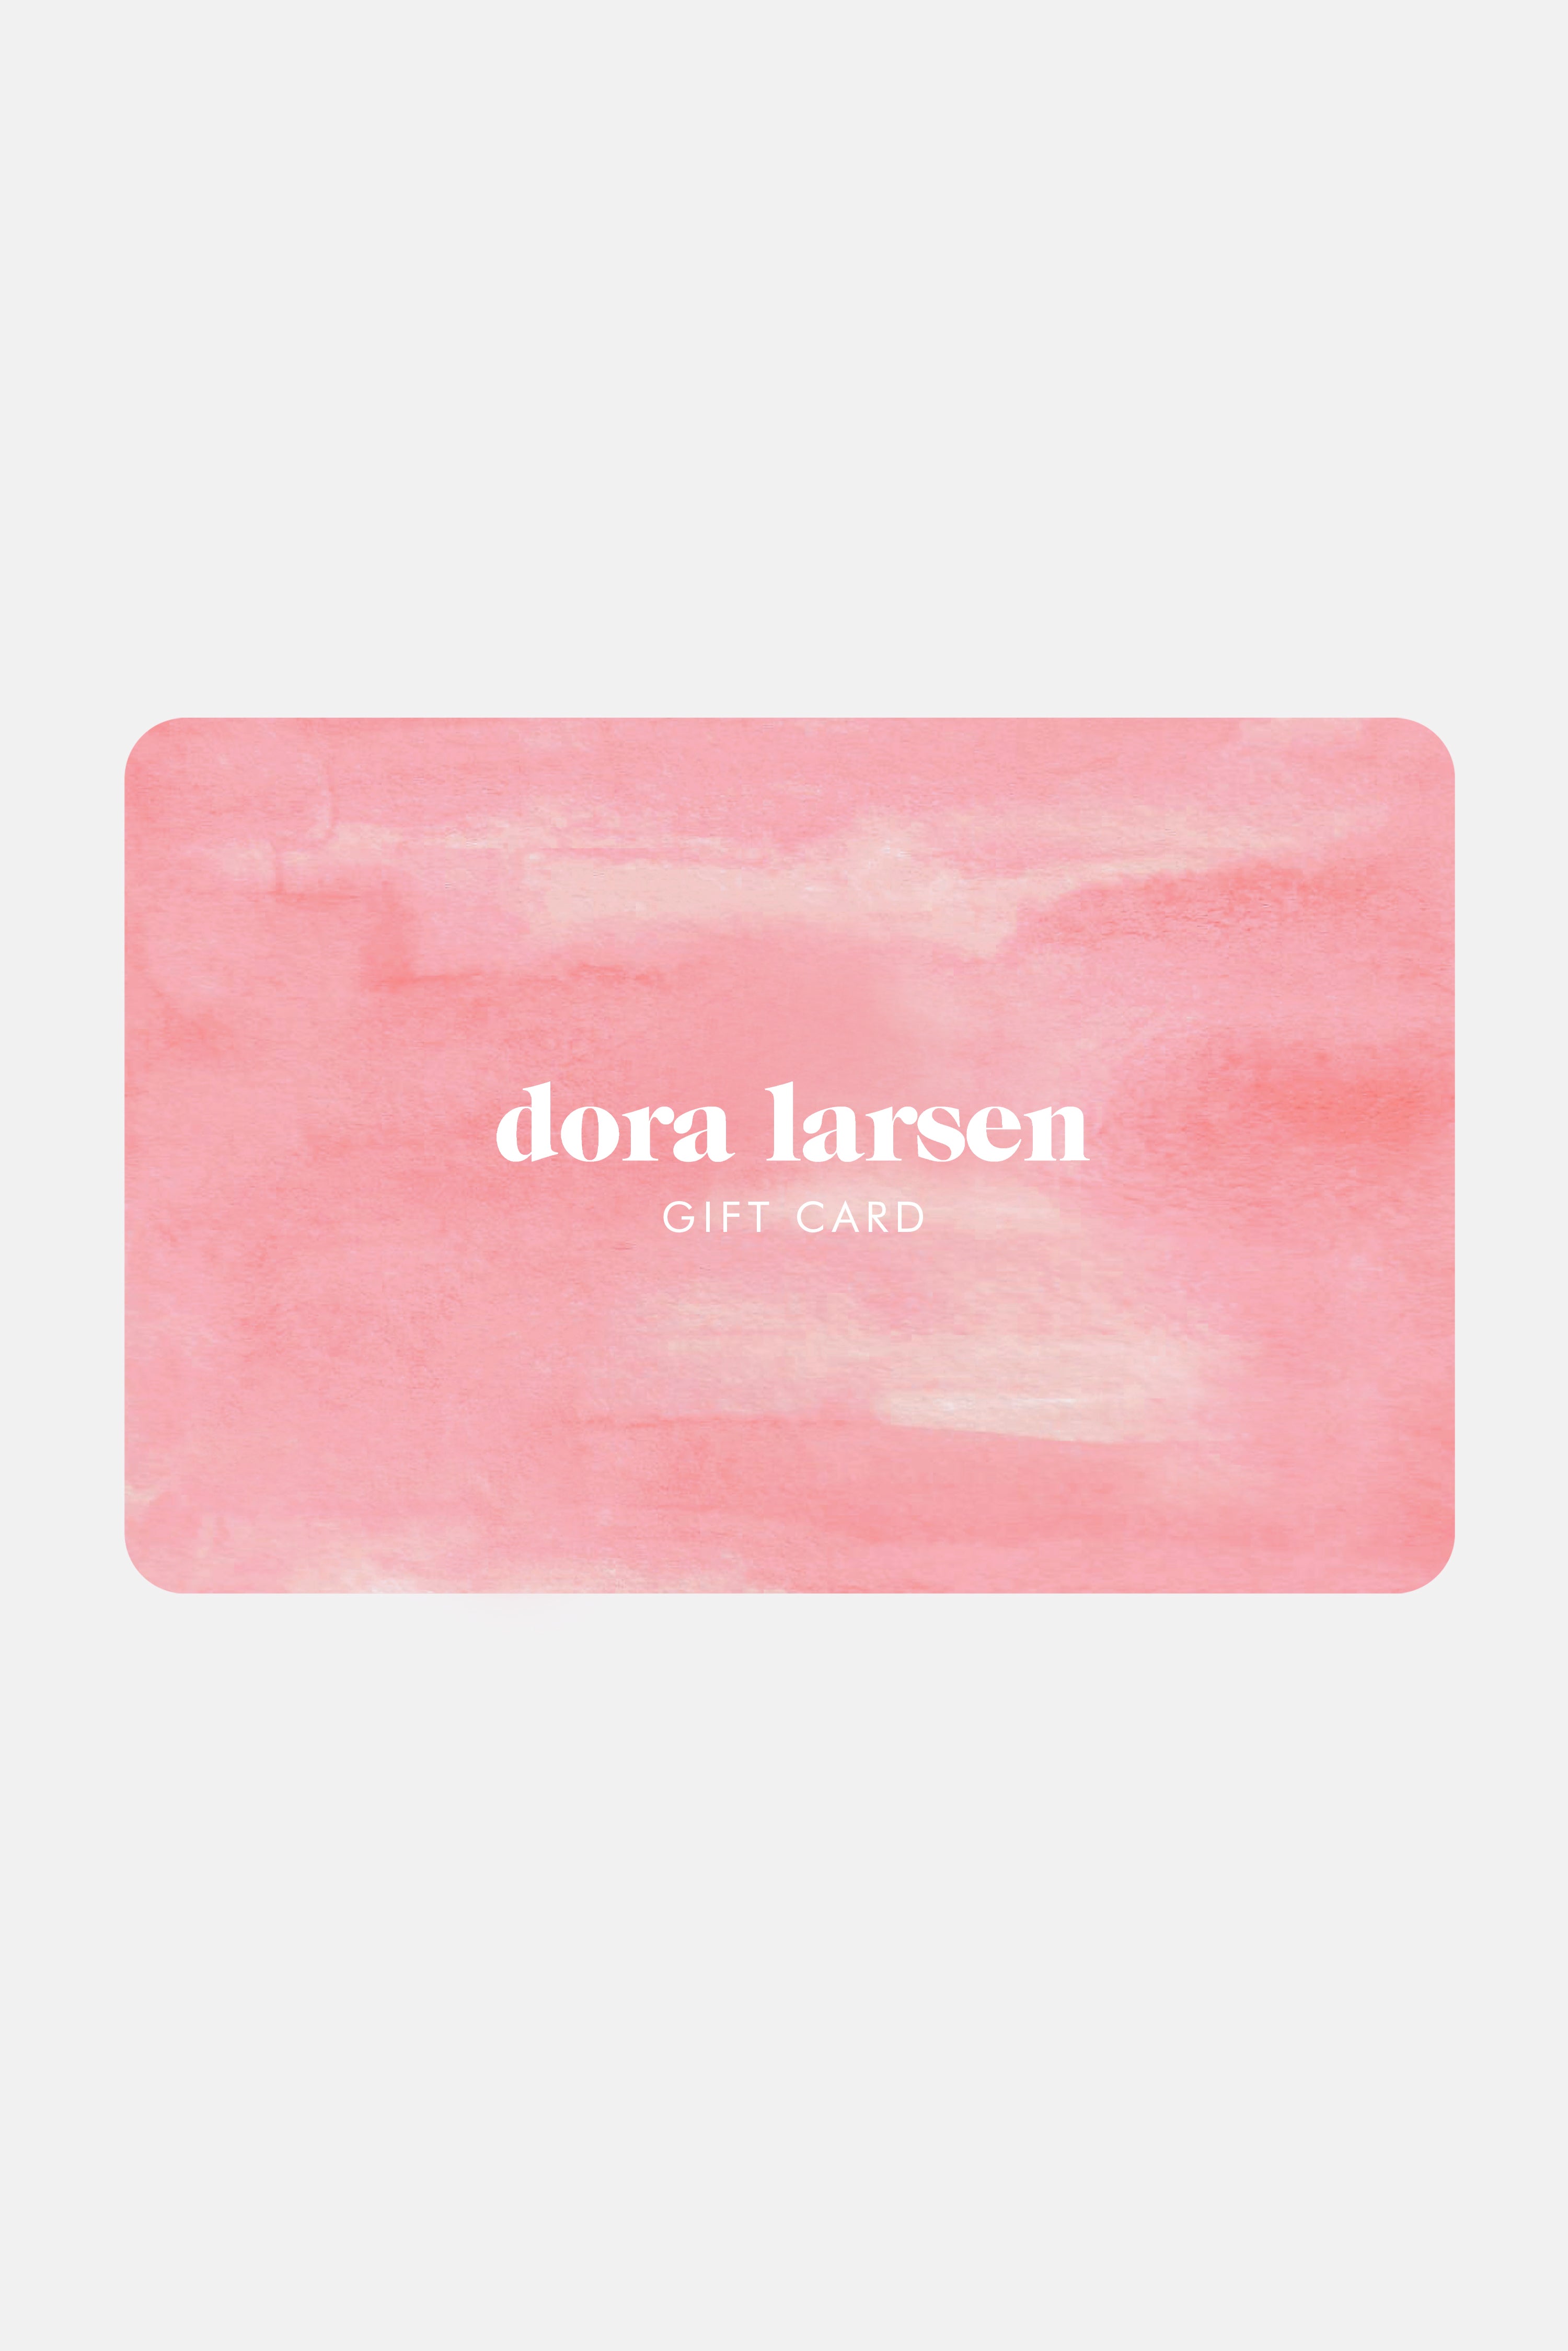 Gift Card – Dora Larsen